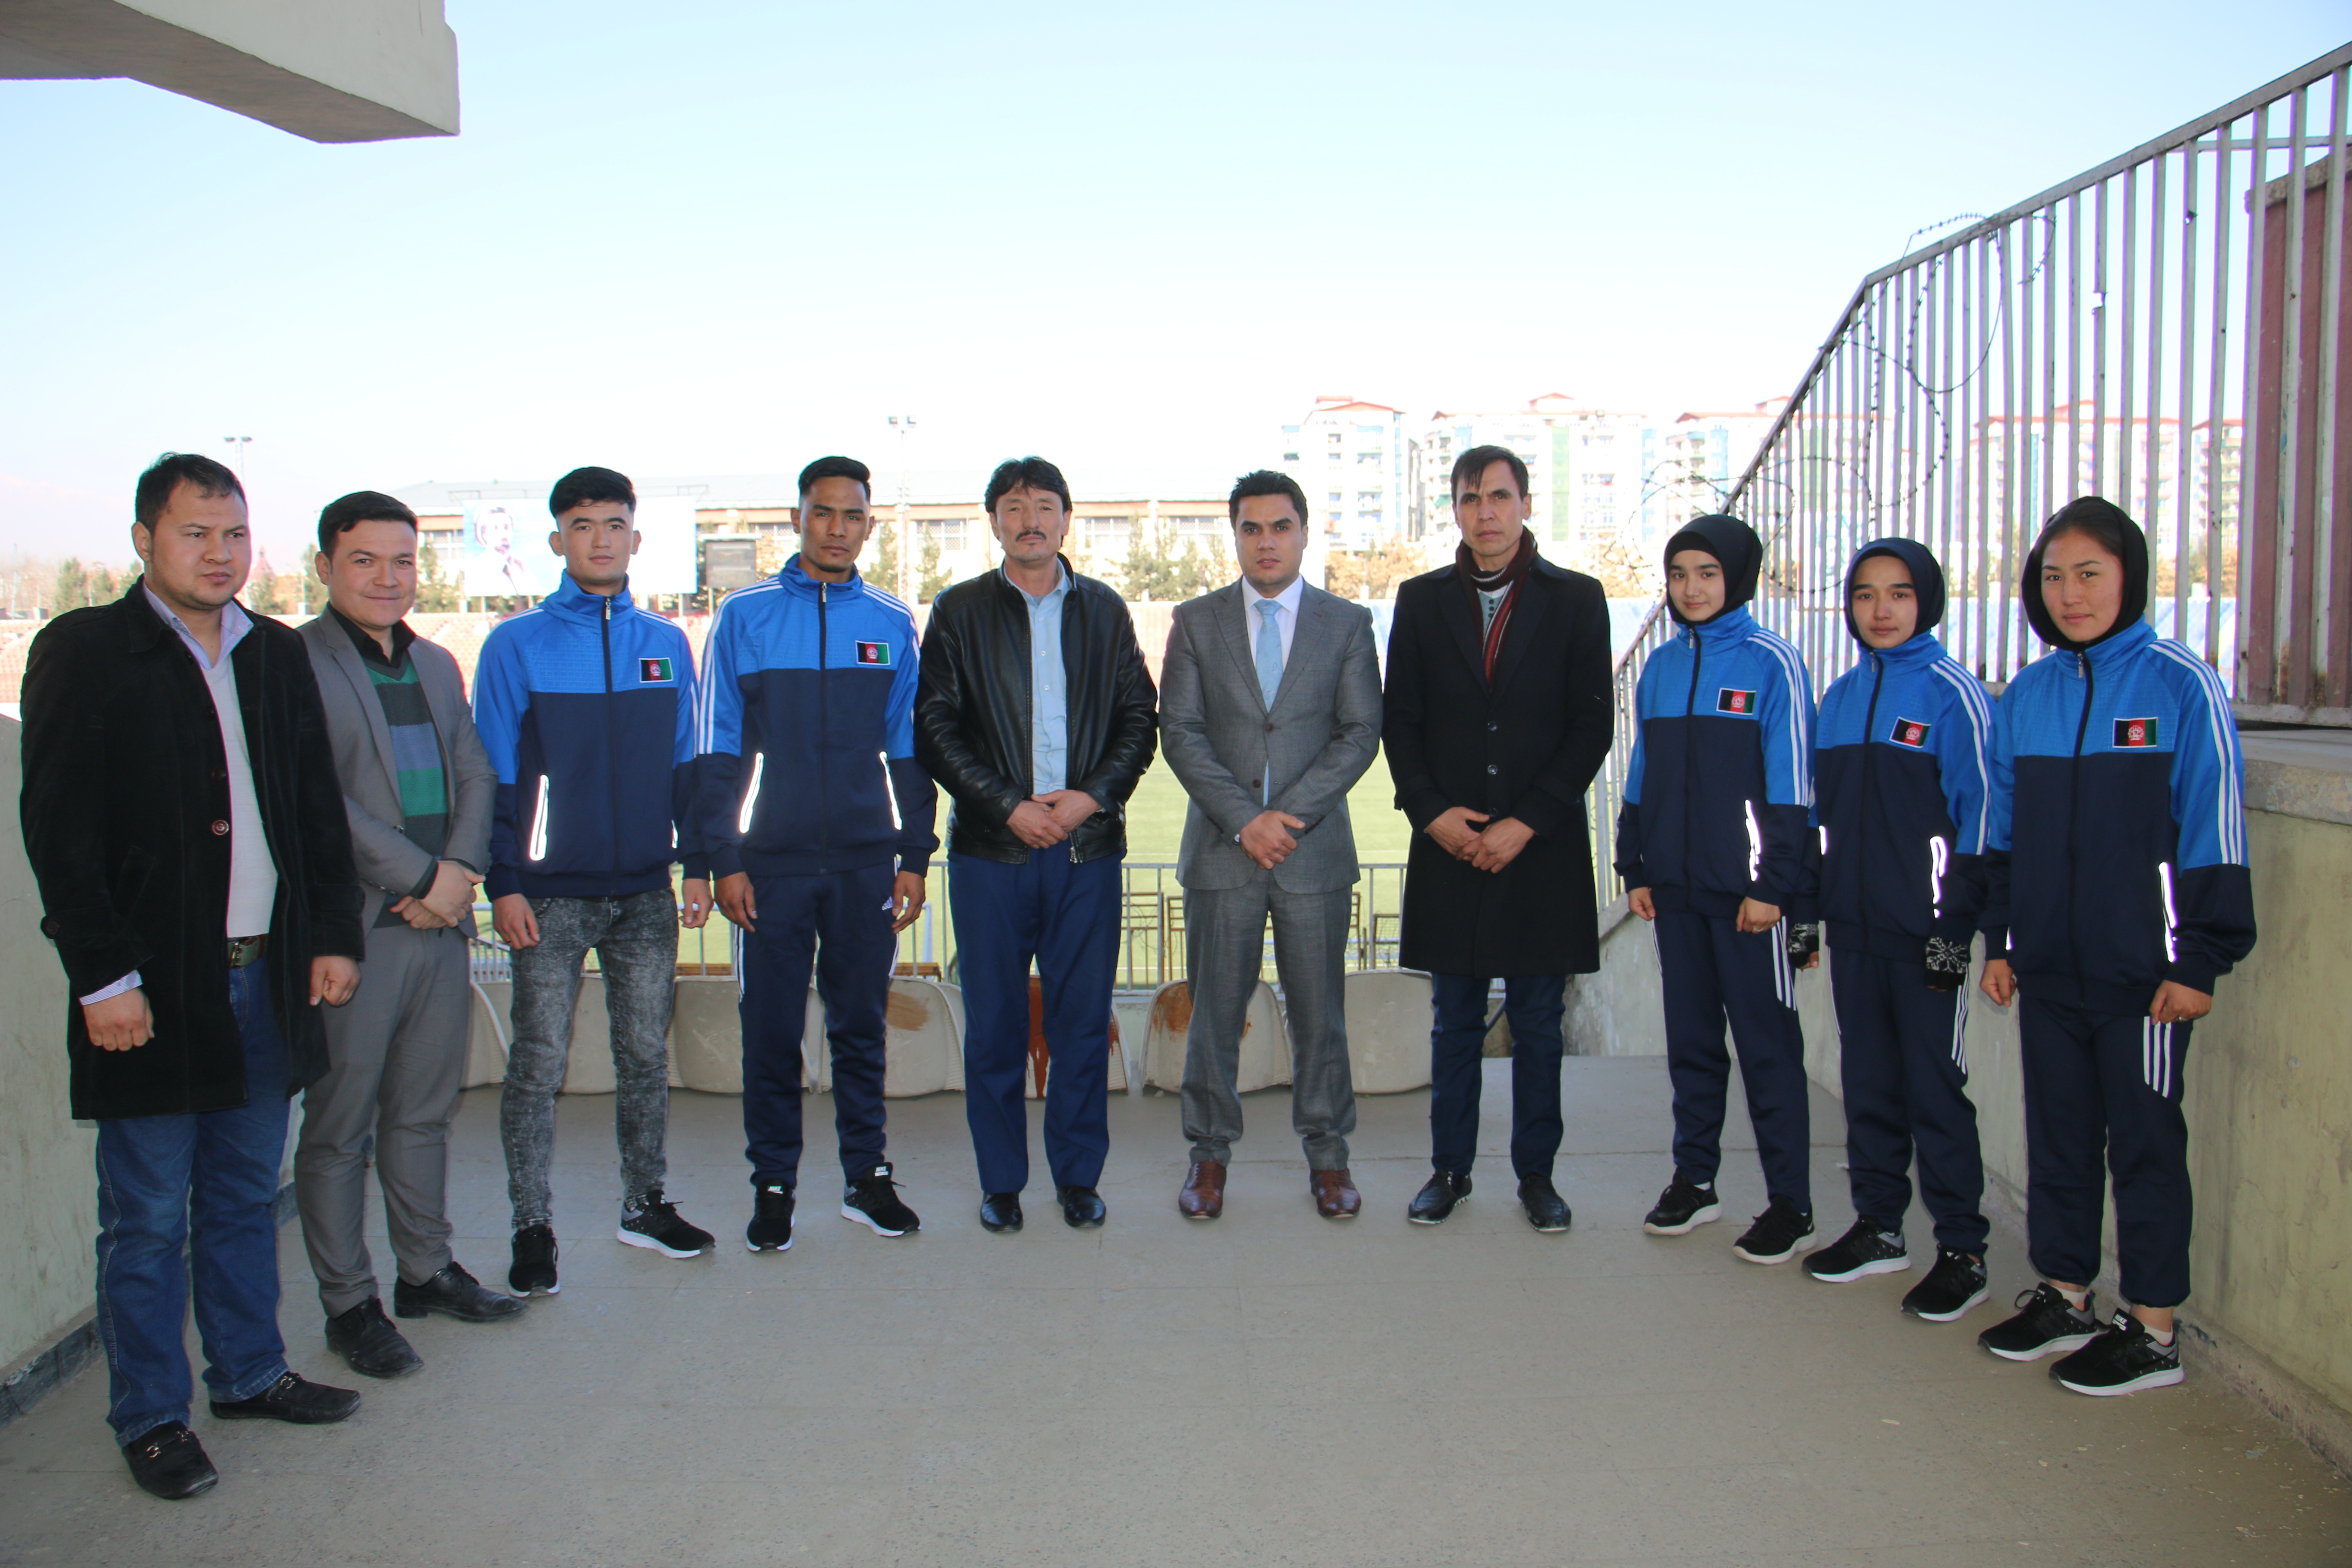 تیم ملی موی تای کشور برای اشتراک در رقابت های قهرمانی آسیا امروز راهی امارات متحده عرب گردید.